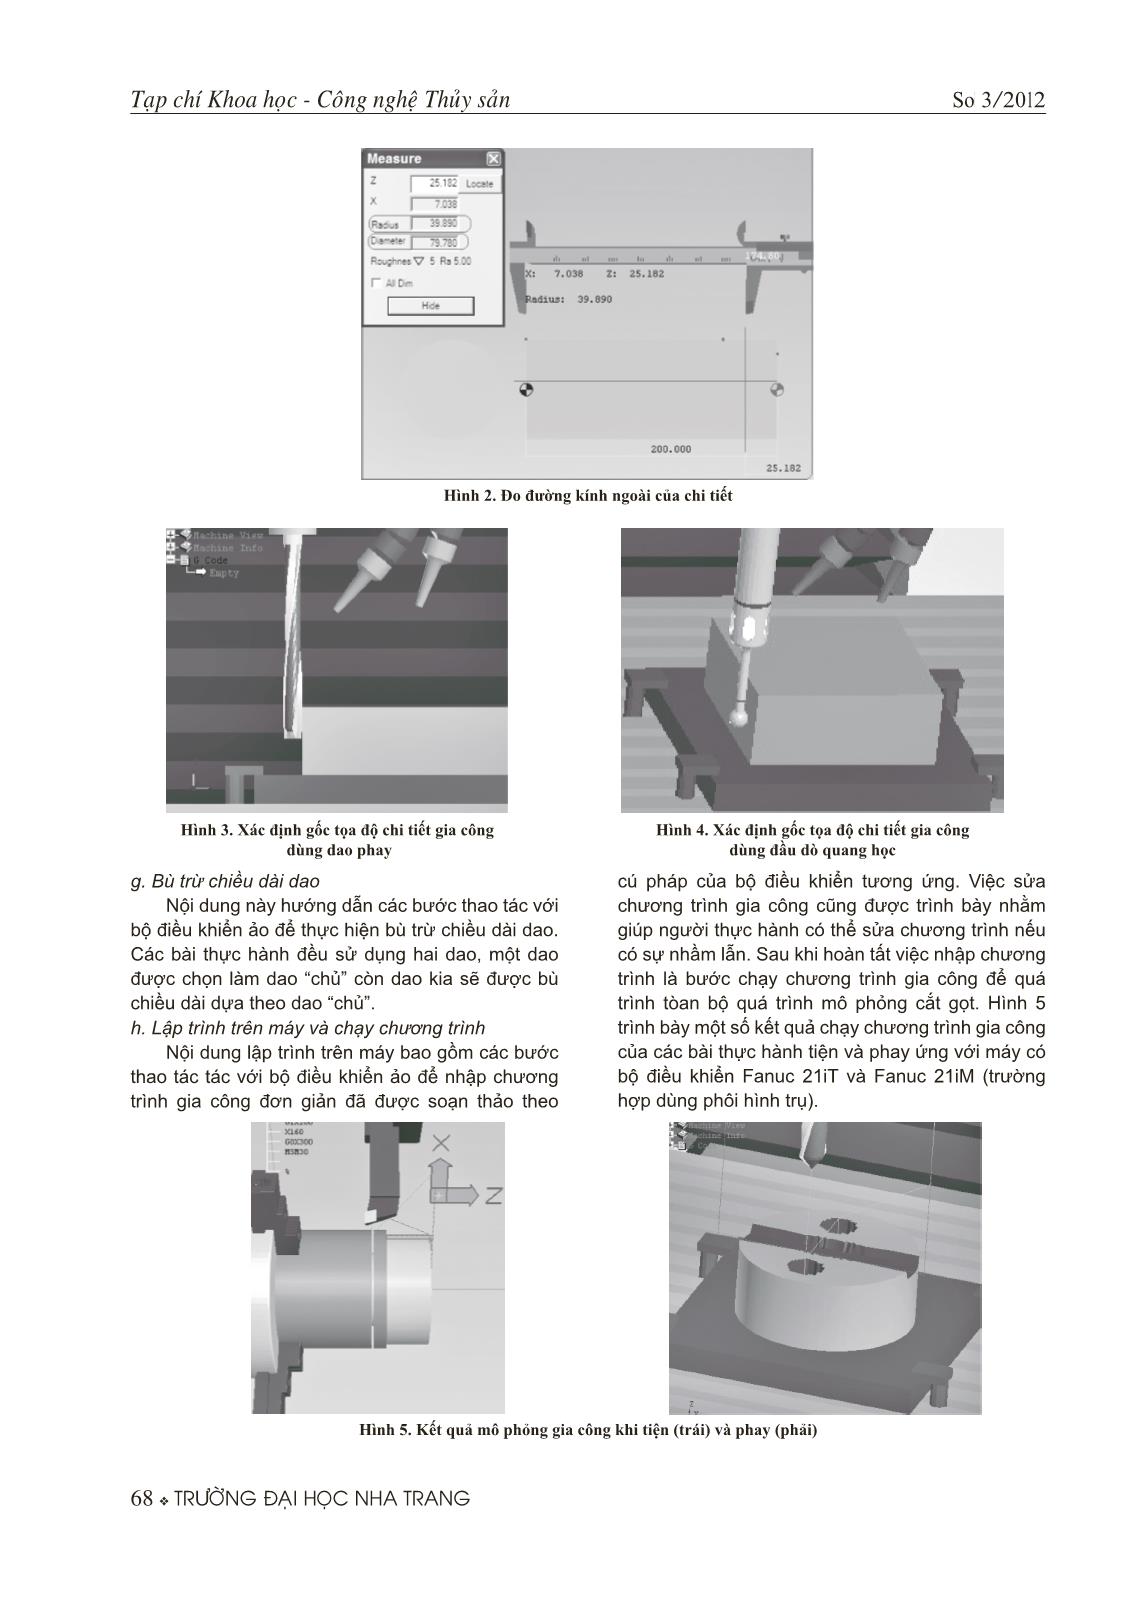 Xây dựng một số bài thực hành ảo về vận hành máy tiện và máy phay CNC trang 4